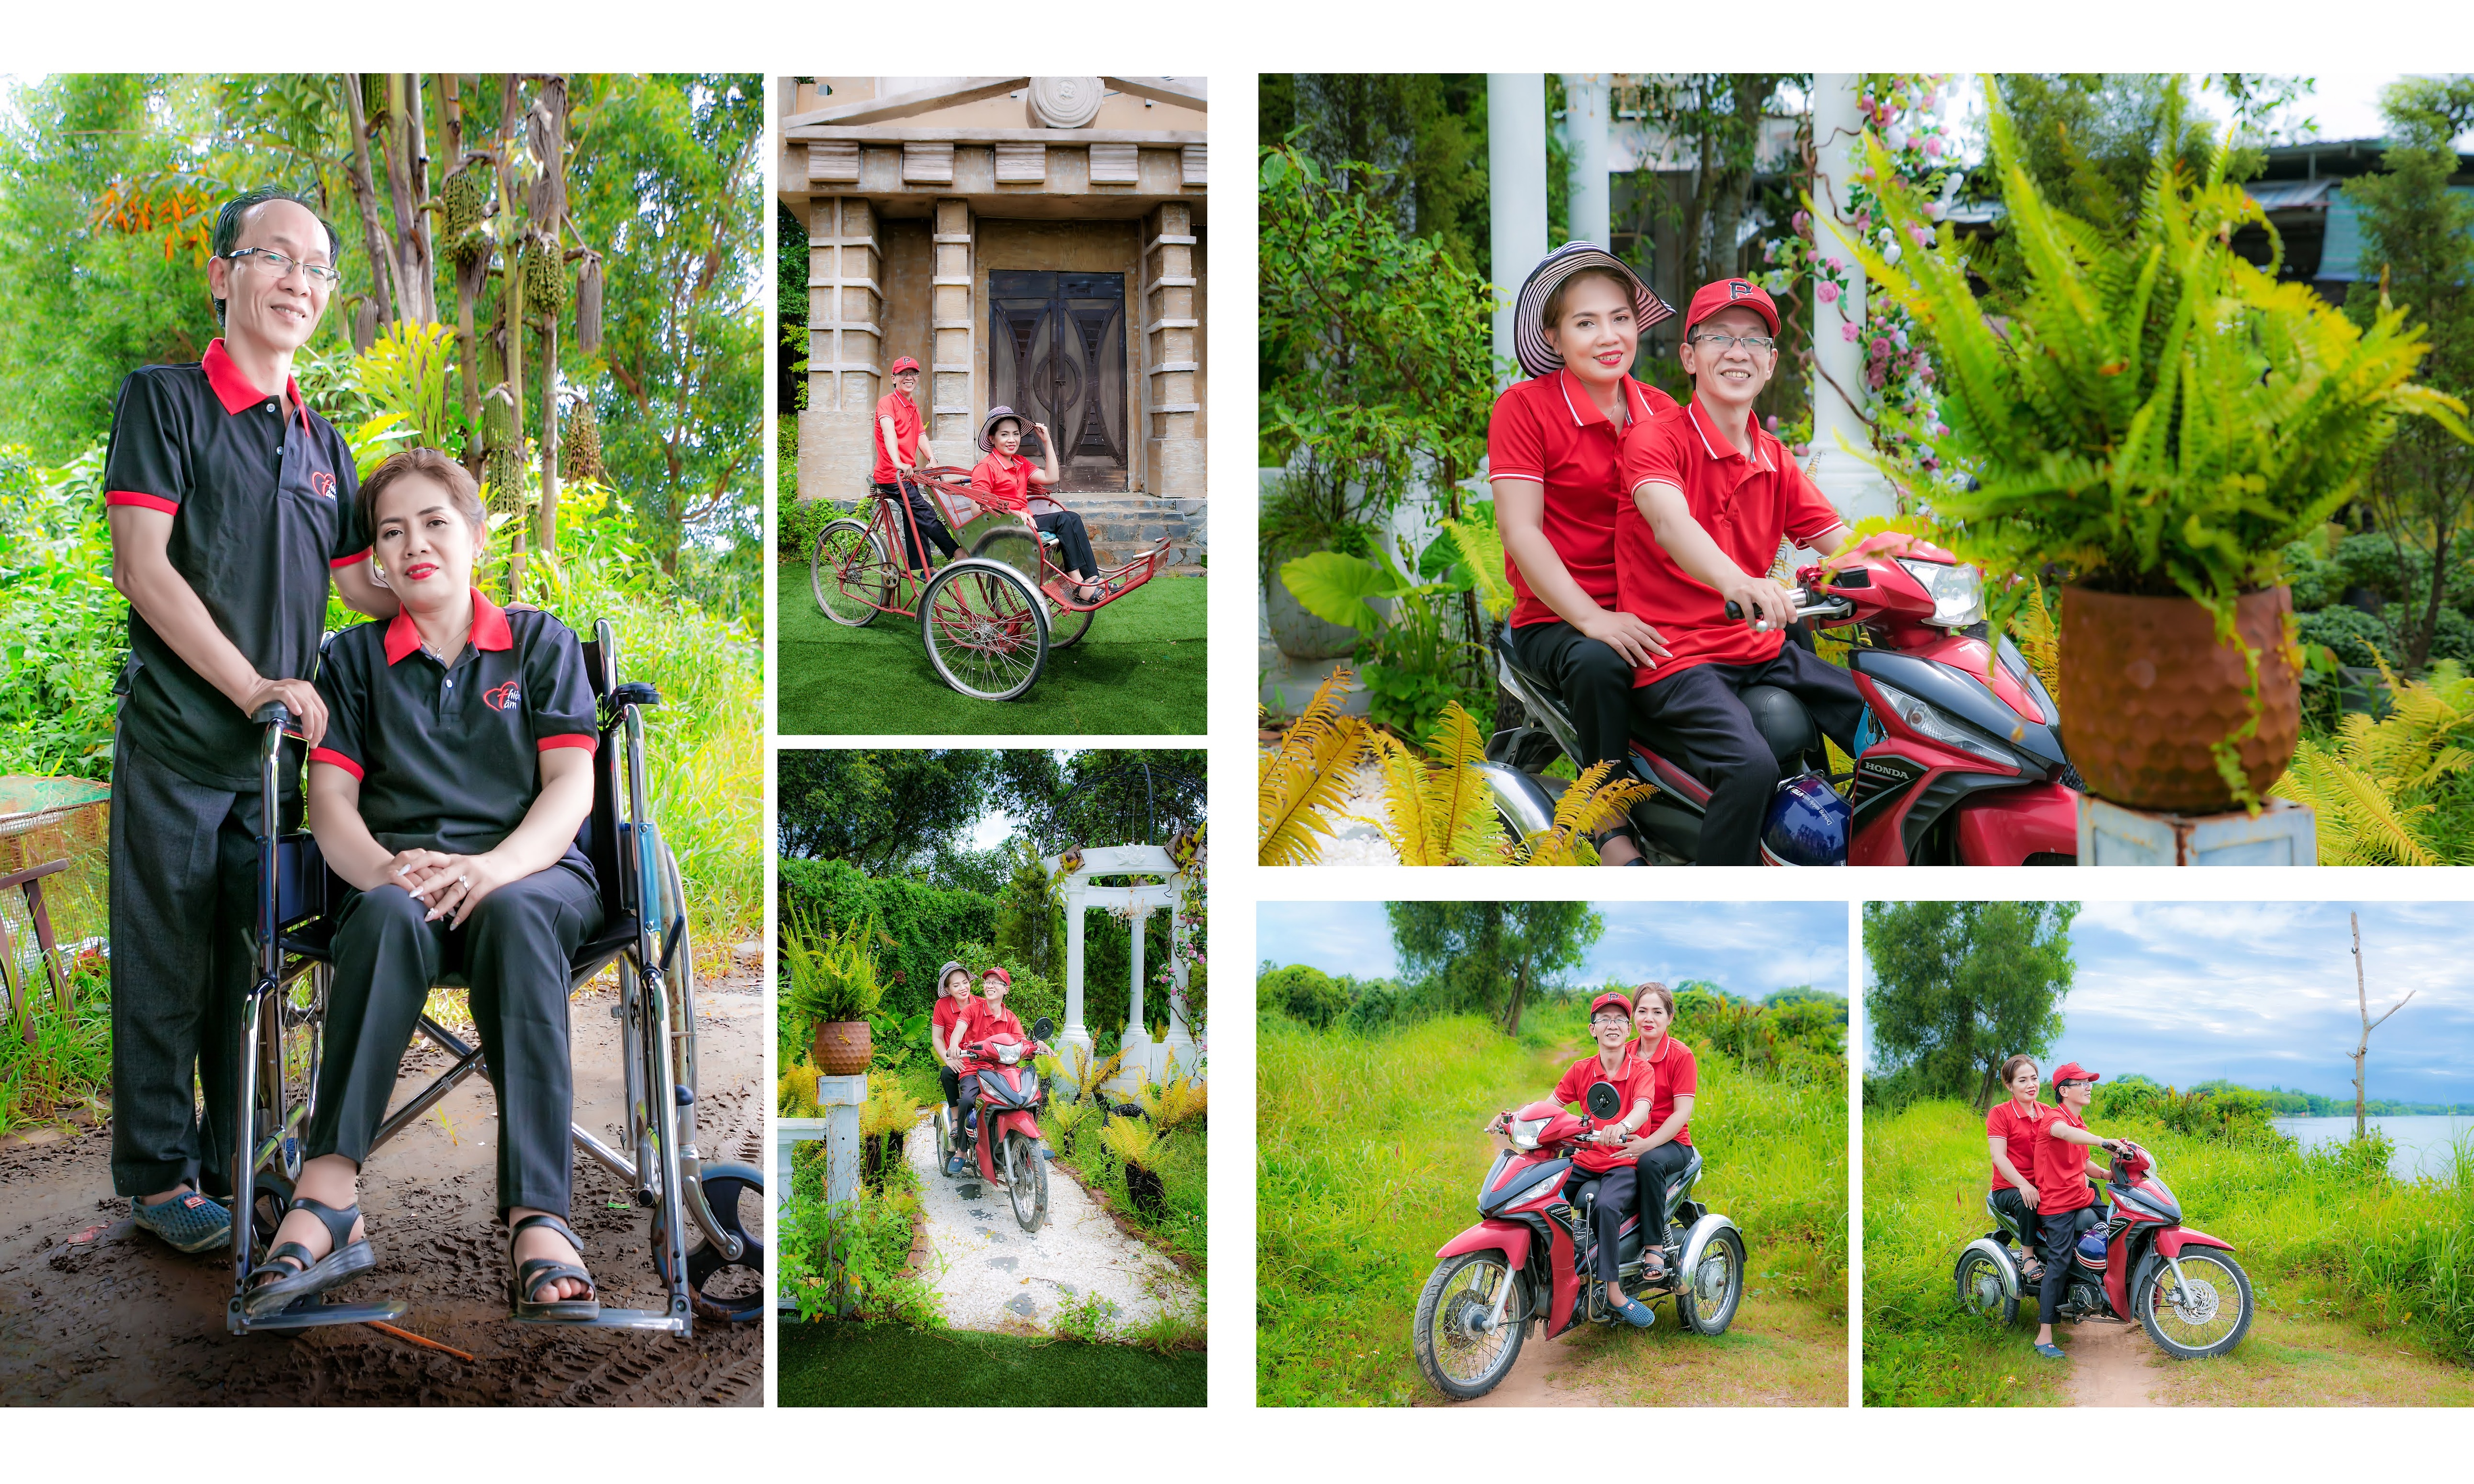 Nhóm bạn Sài Gòn và những bộ ảnh cưới trong mơ dành tặng người khuyết tật - Ảnh 7.